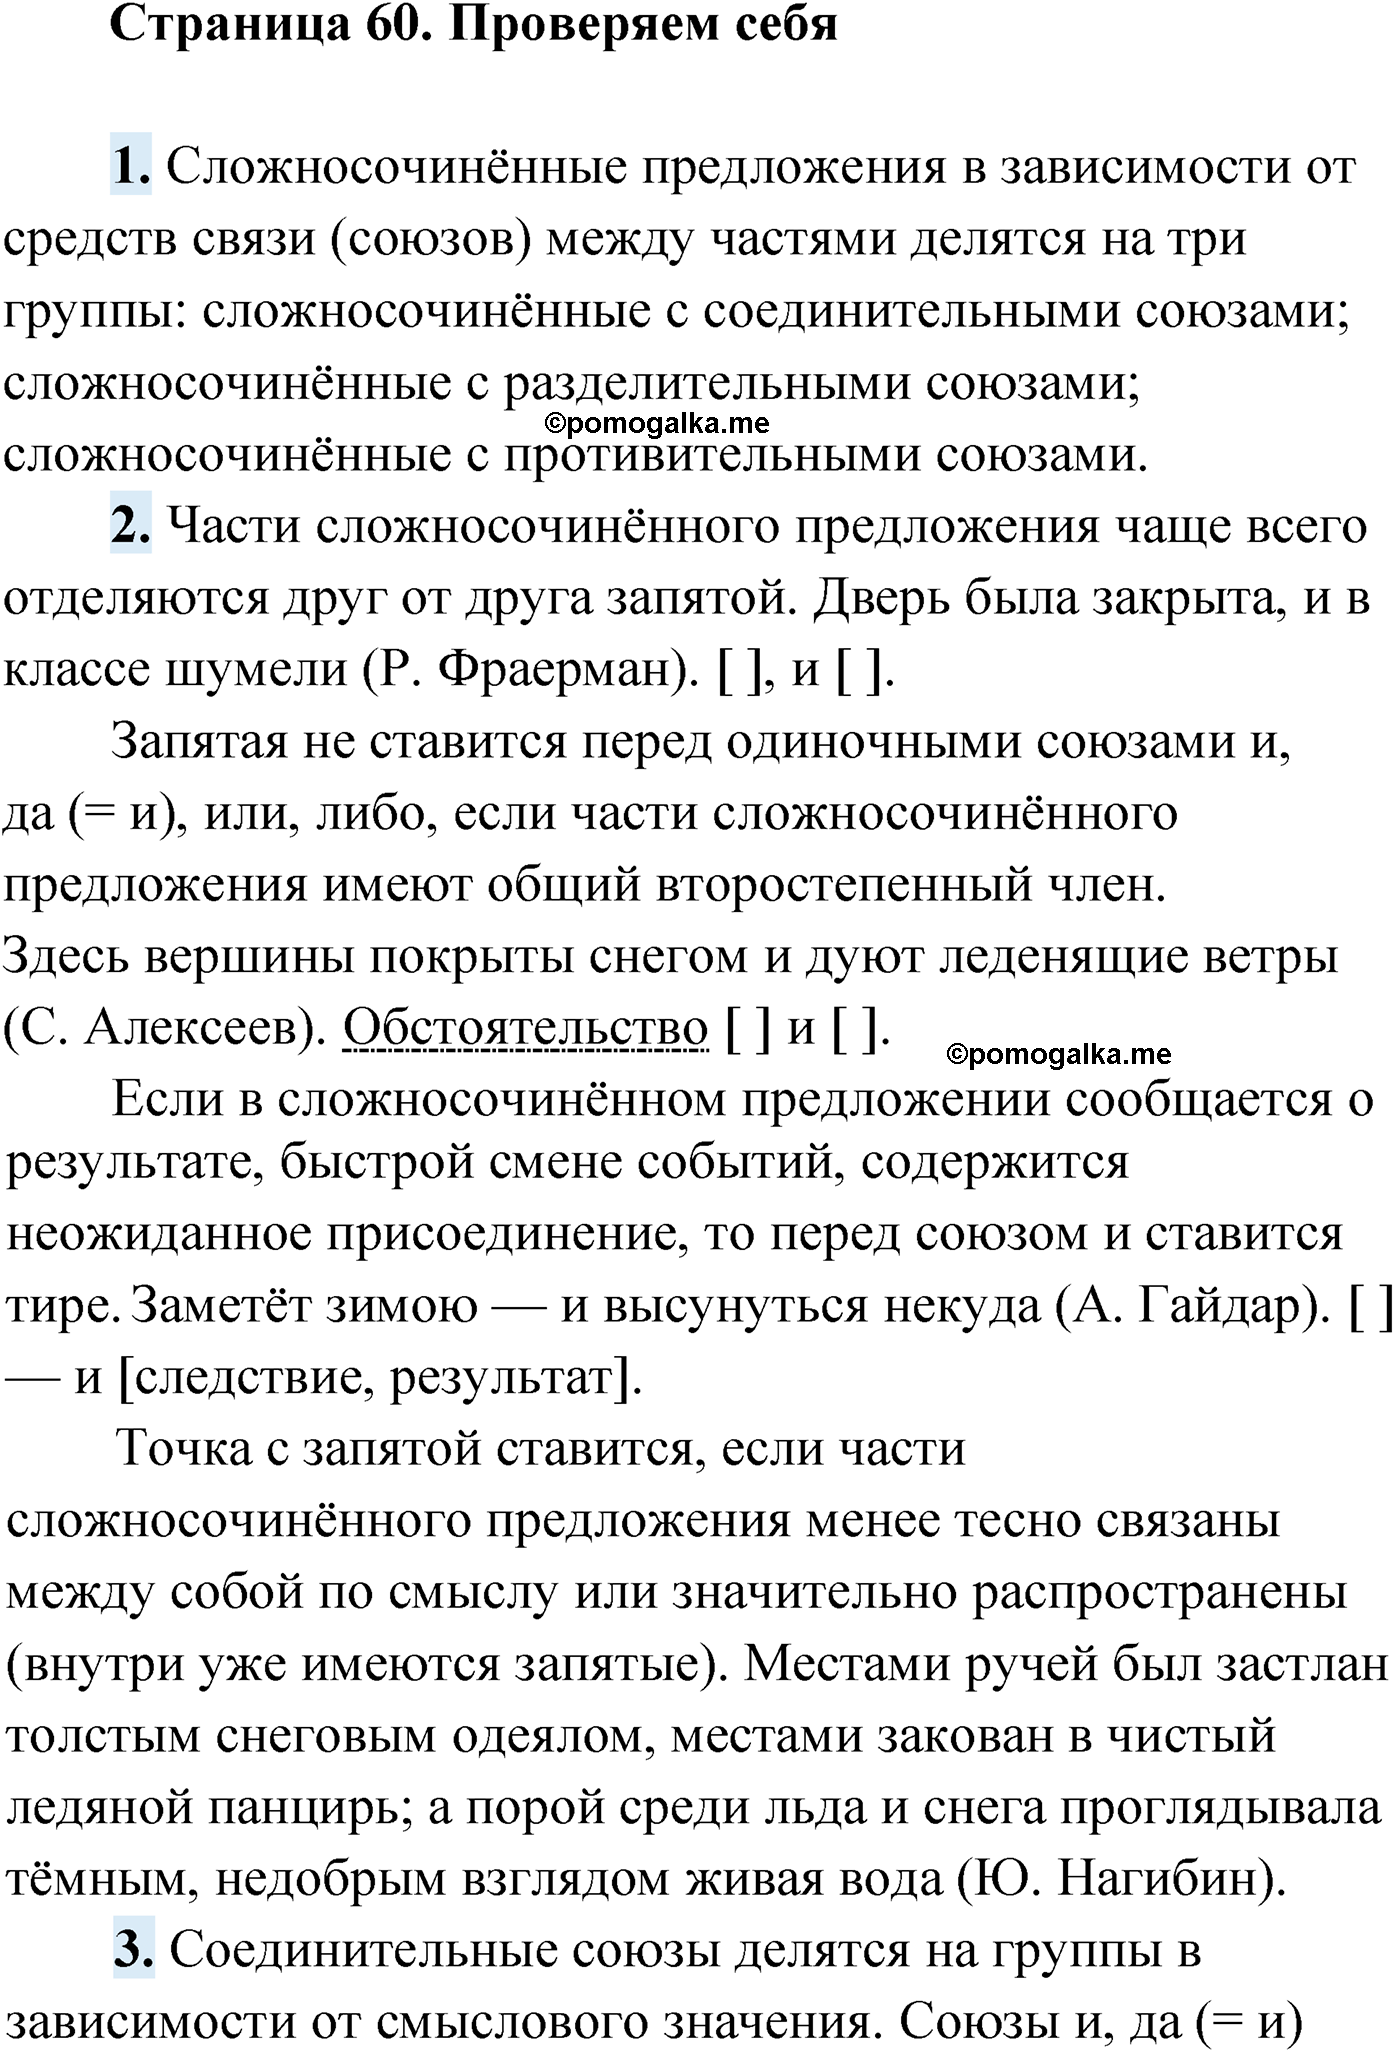 Проверь себя, Страница 60 русский язык 9 класс Мурина 2019 год